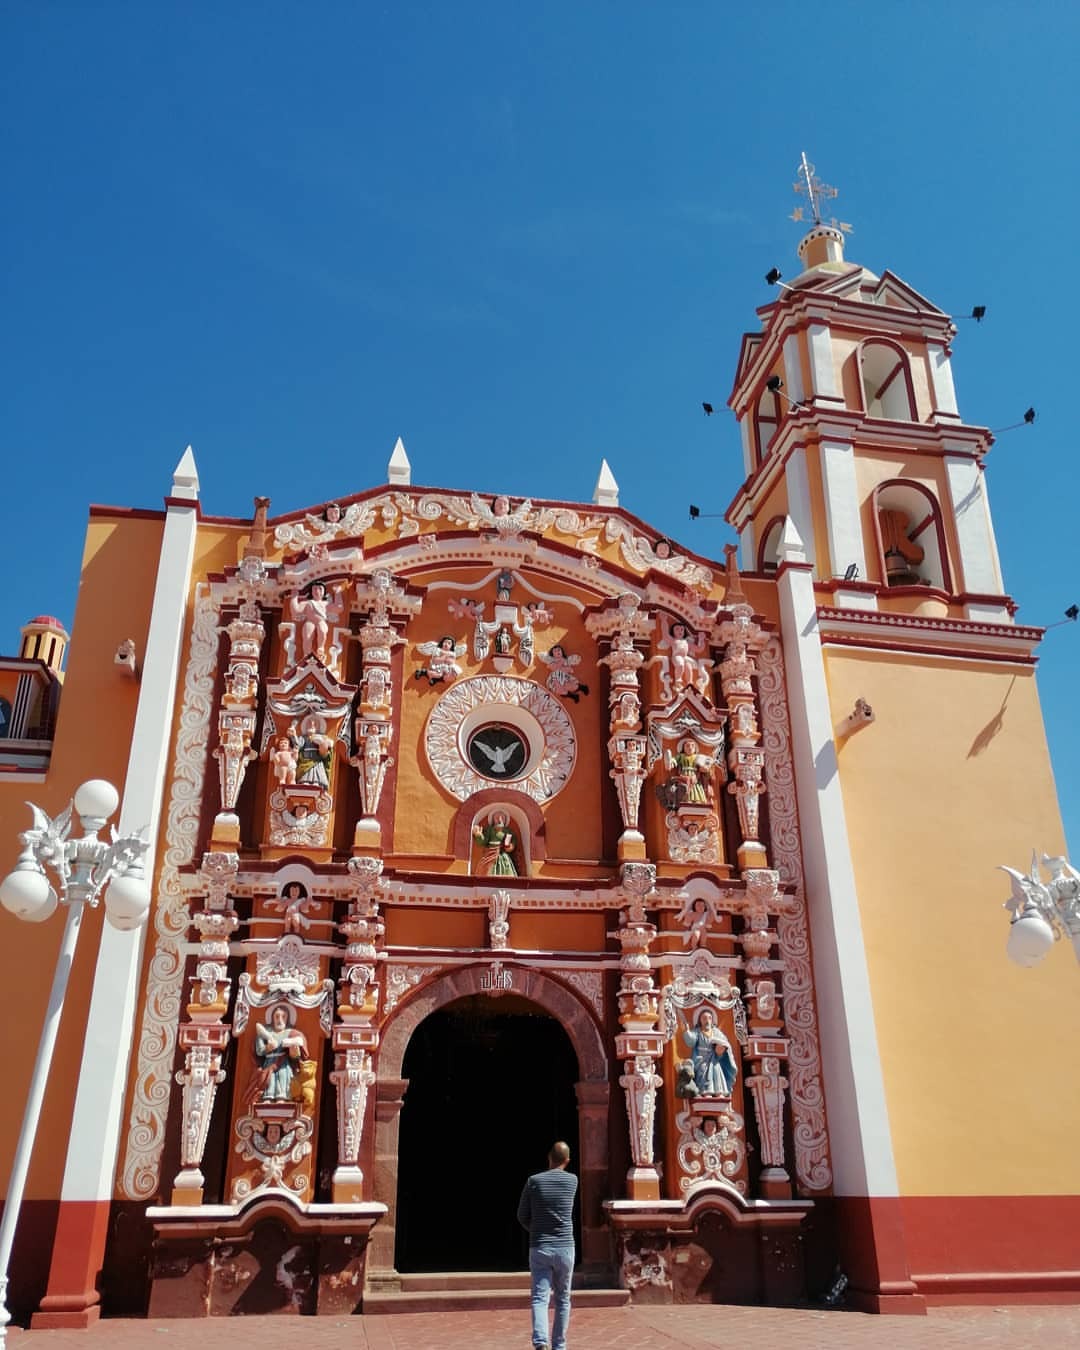 #mextagram #Pueblagram #pueblatravel #explorapuebla #turismo #turismomexico #barroco #Puebla #tecomatlan #Espartaqueada2020 (en Tecomatlán, Puebla, Mexico)
https://www.instagram.com/p/B8R2ChChIoZ/?igshid=8ebo7ttgetui